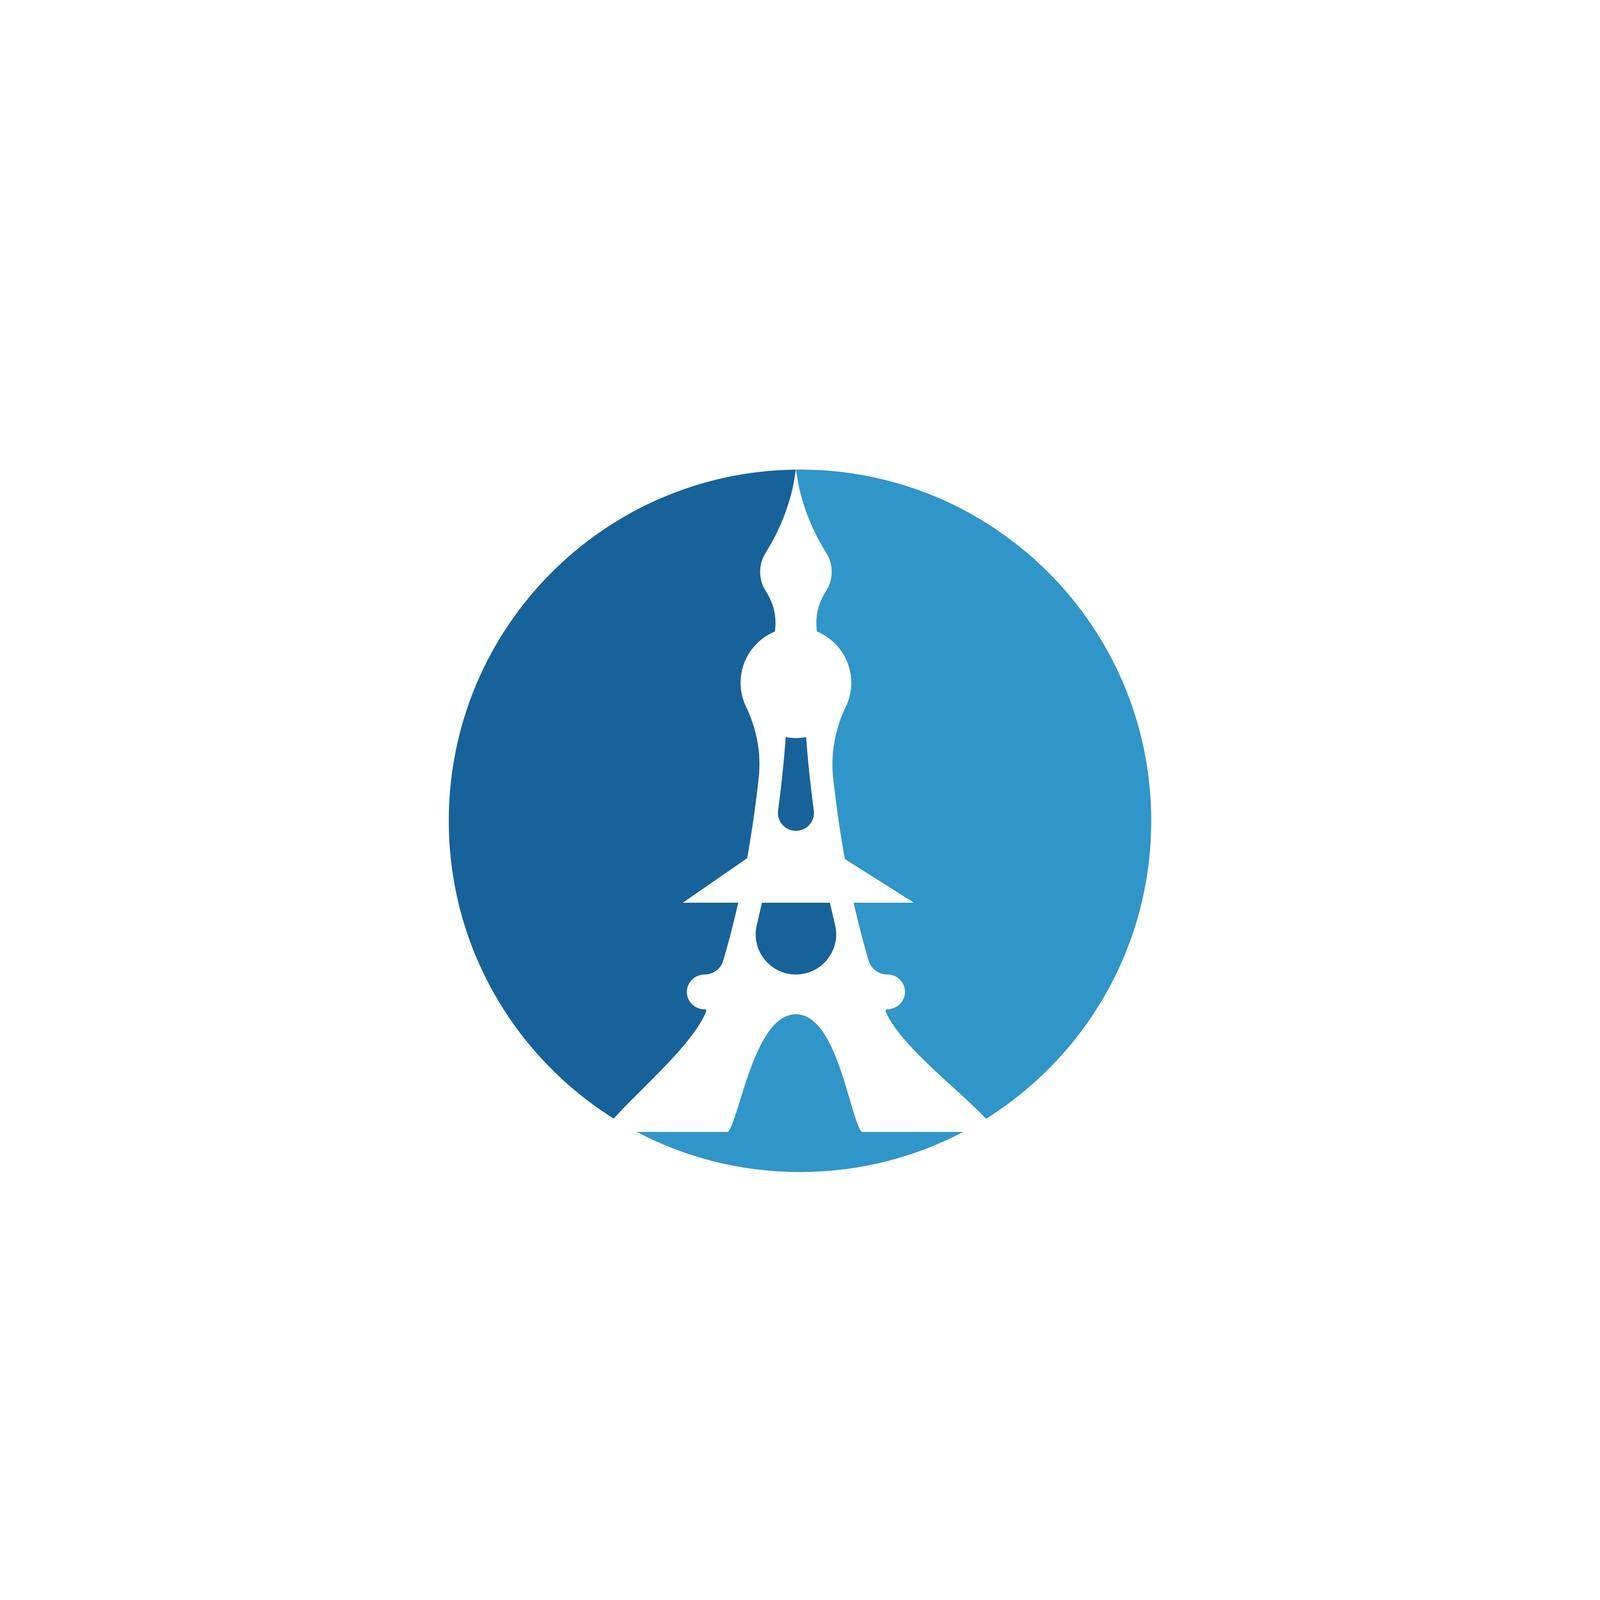 eifel tower logo by awk